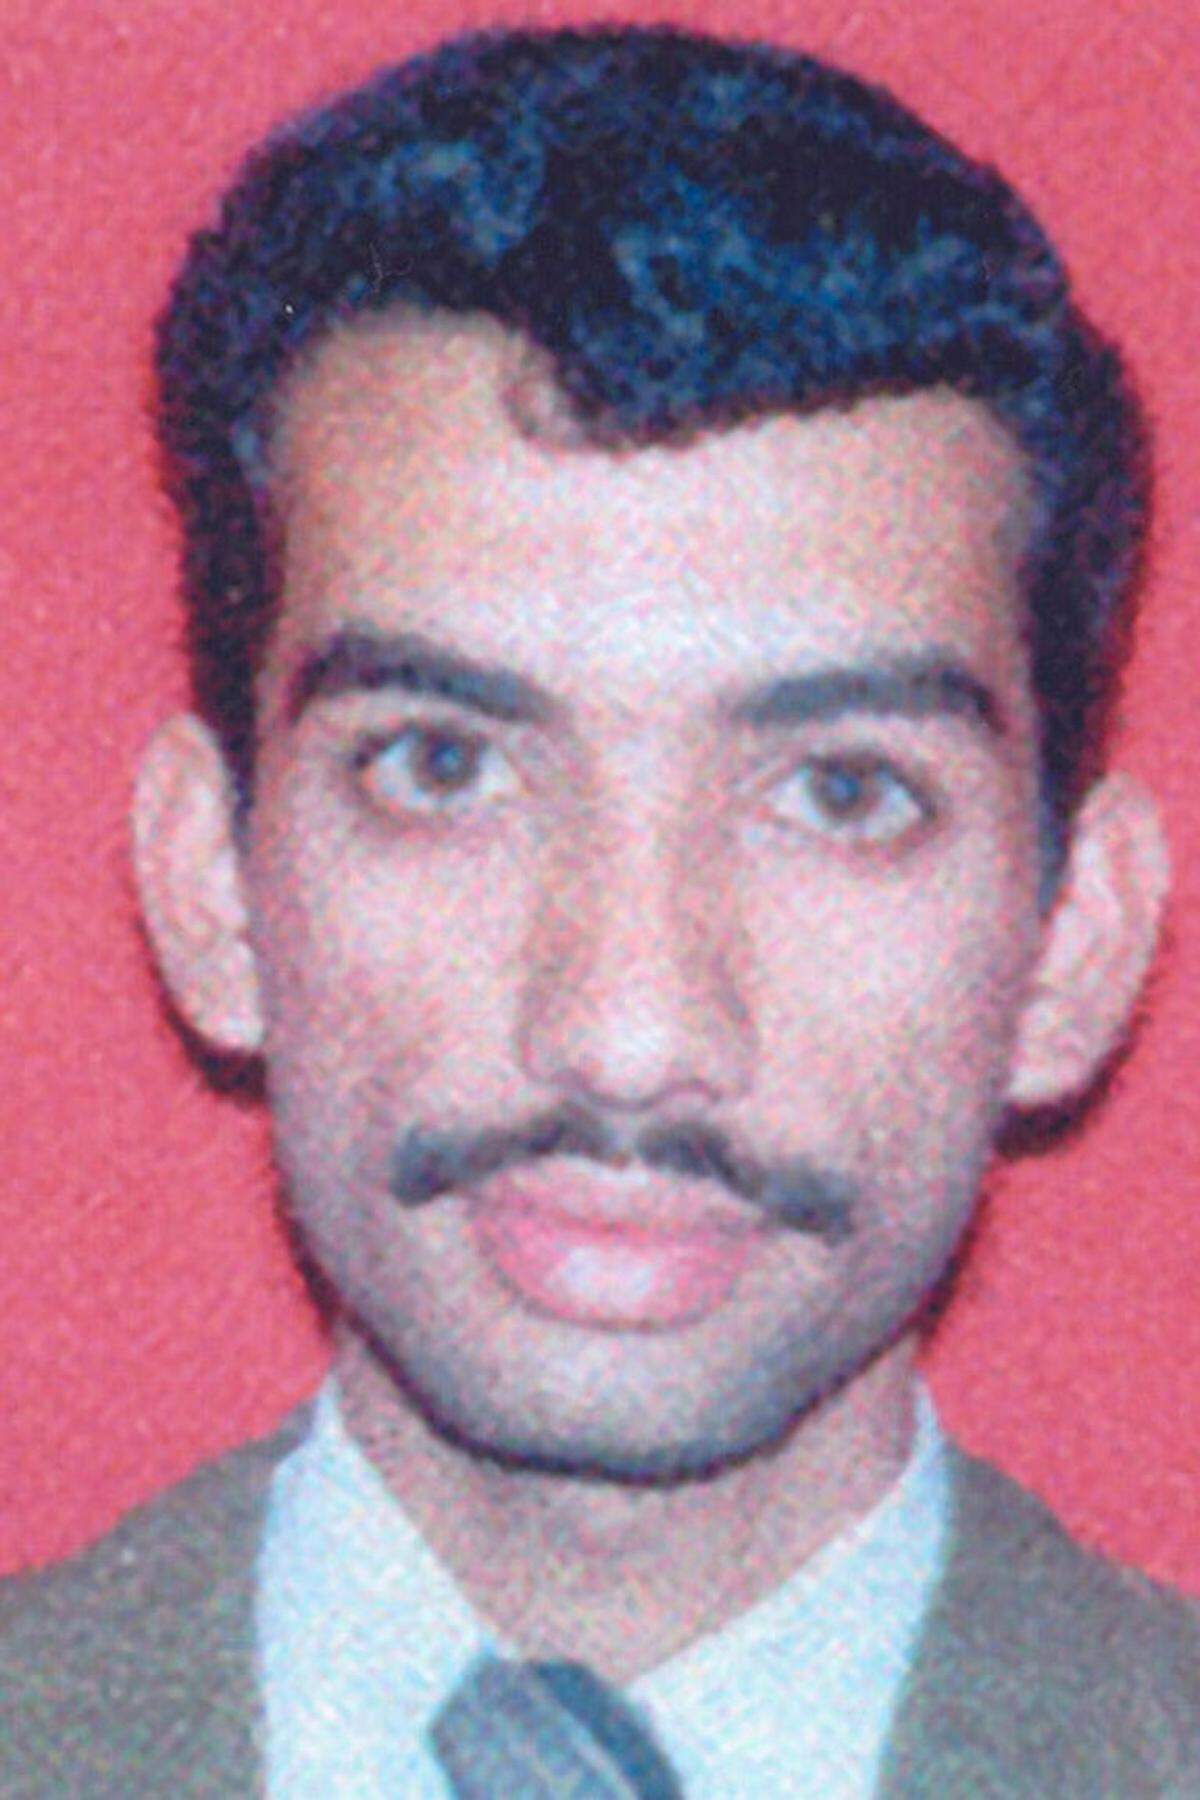 Der in Kuwait aufgewachsene Ammar al-Baluchi soll die Flugzeugattentäter mit Geld versorgt haben. Er ist mit Sheikh Mohammed und dem Drahtzieher des Anschlags von 1993 auf das World Trade Center, Ramsi Yousef, verwandt. Yousef war im November 1997 zu einer Freiheitsstrafe von 240 Jahren verurteilt worden.